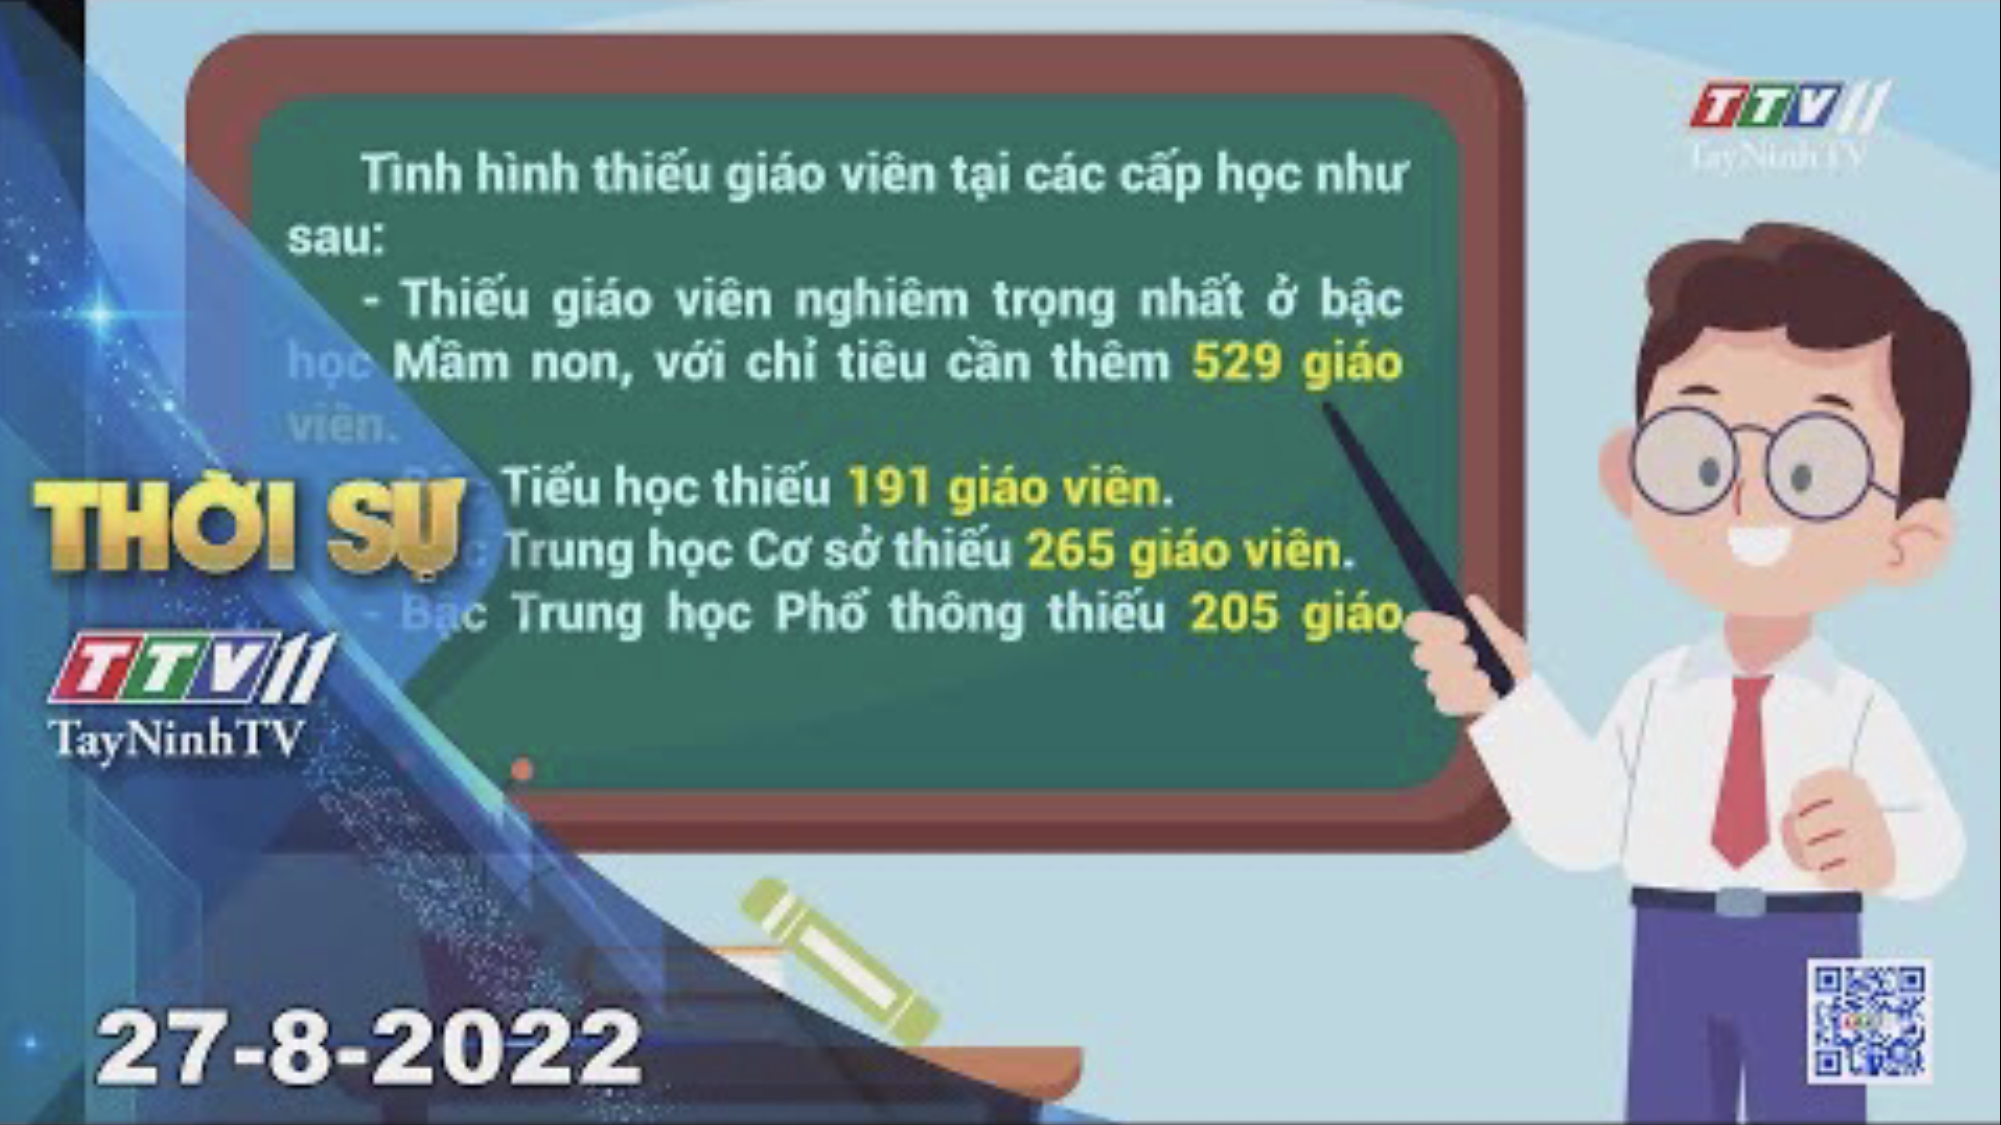 Thời sự Tây Ninh 27-8-2022 | Tin tức hôm nay | TayNinhTV